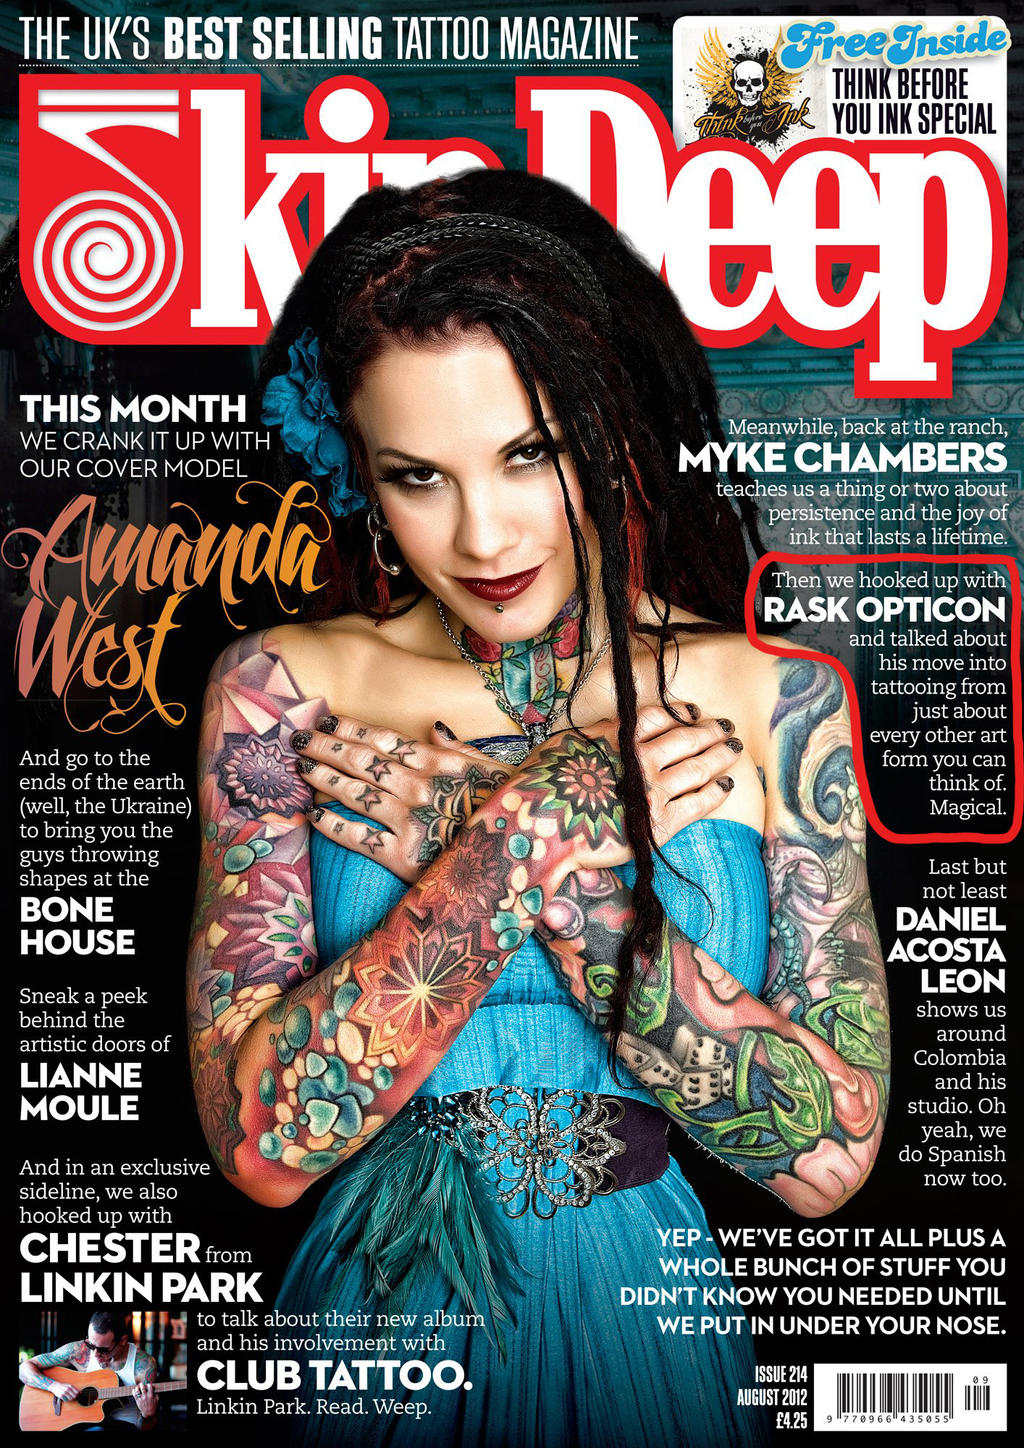 Skin Deep tattoo magazine interview/feature by rAskopticon